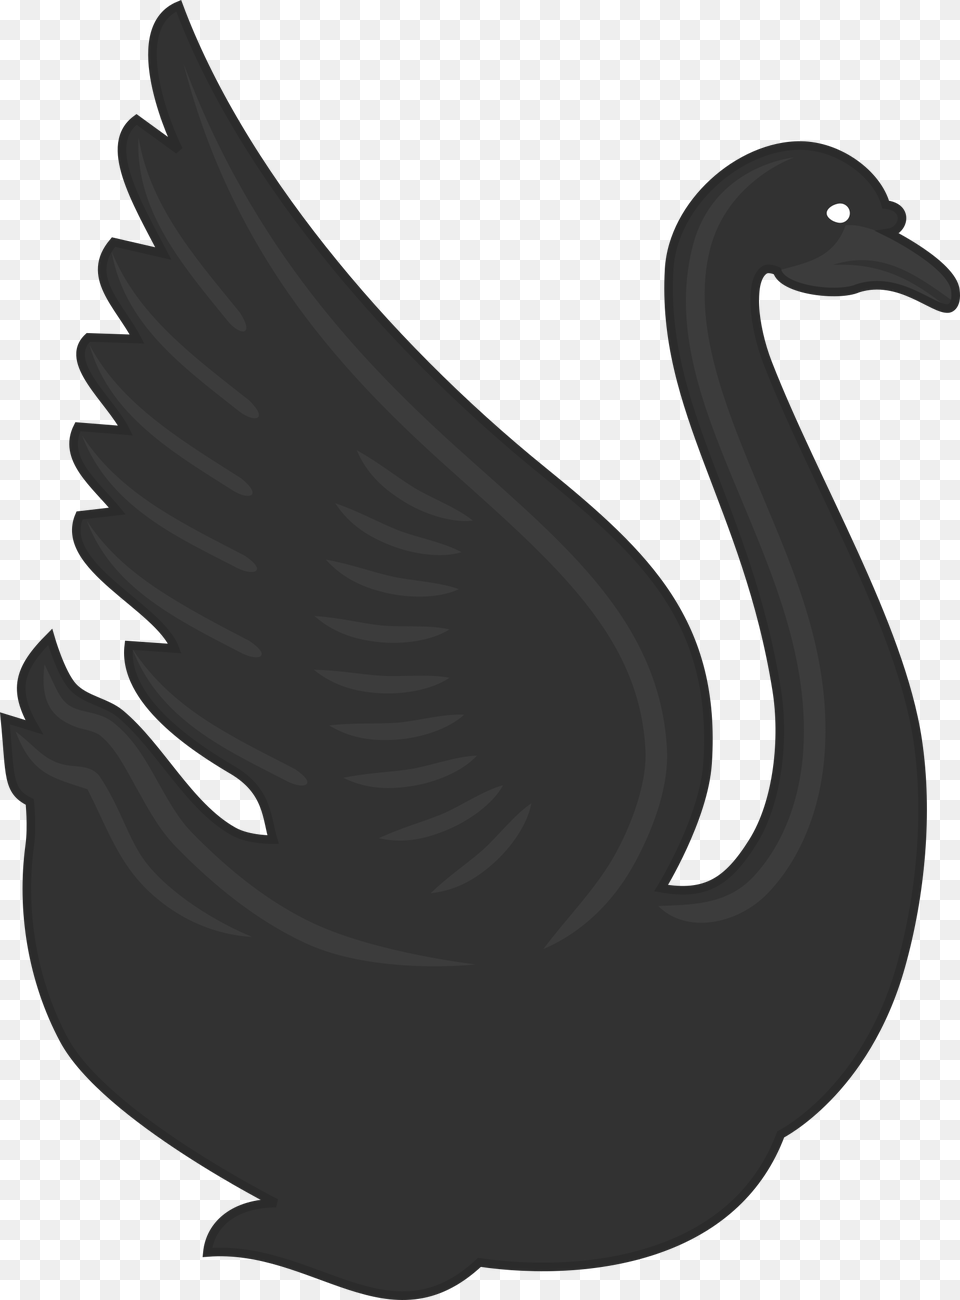 This Icons Design Of Swan, Animal, Bird, Smoke Pipe Free Transparent Png